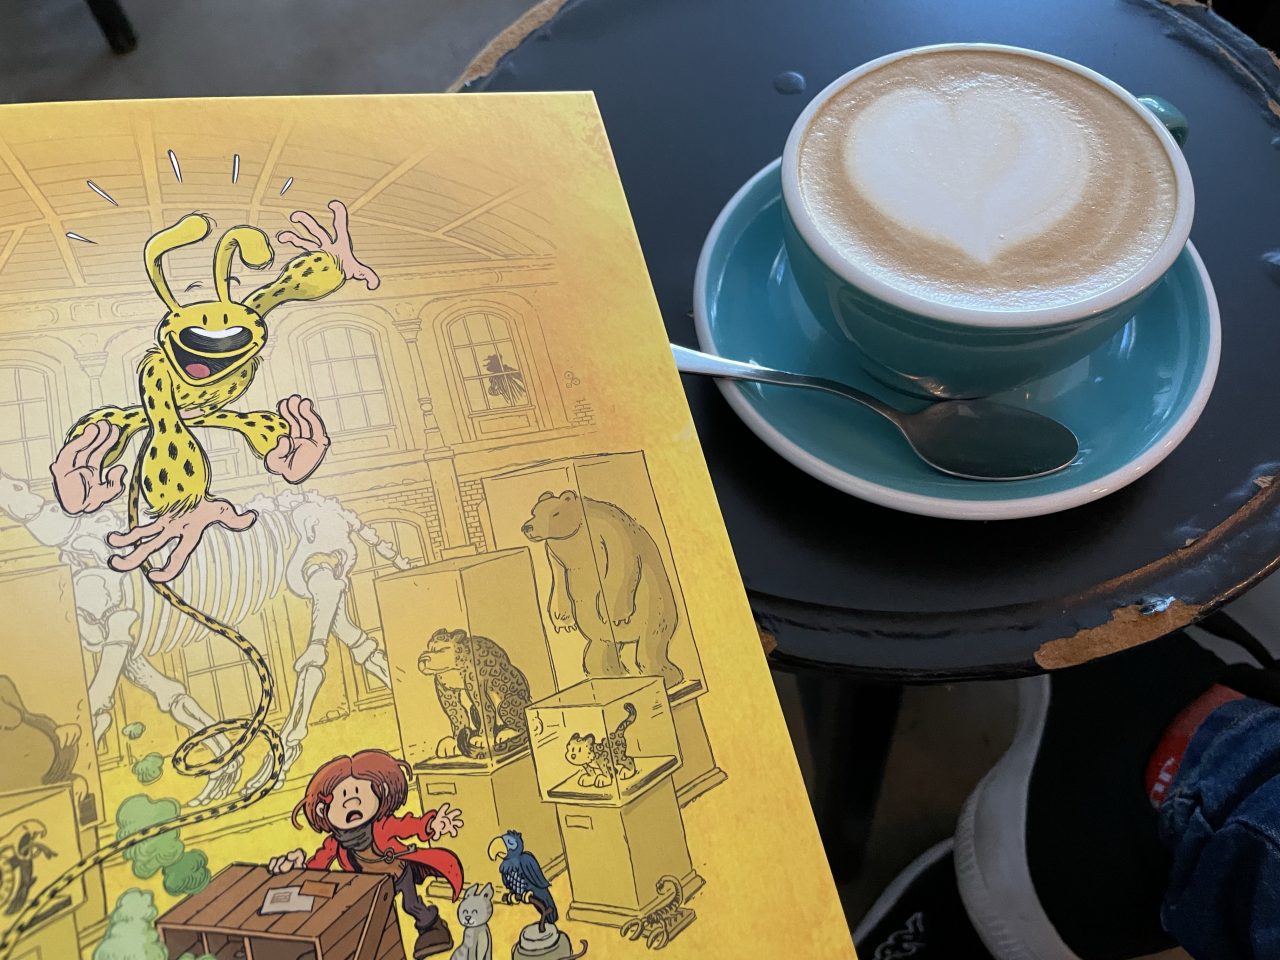 das Comicbuch "Marsupilamie" neben einen Kaffee auf dem Tisch